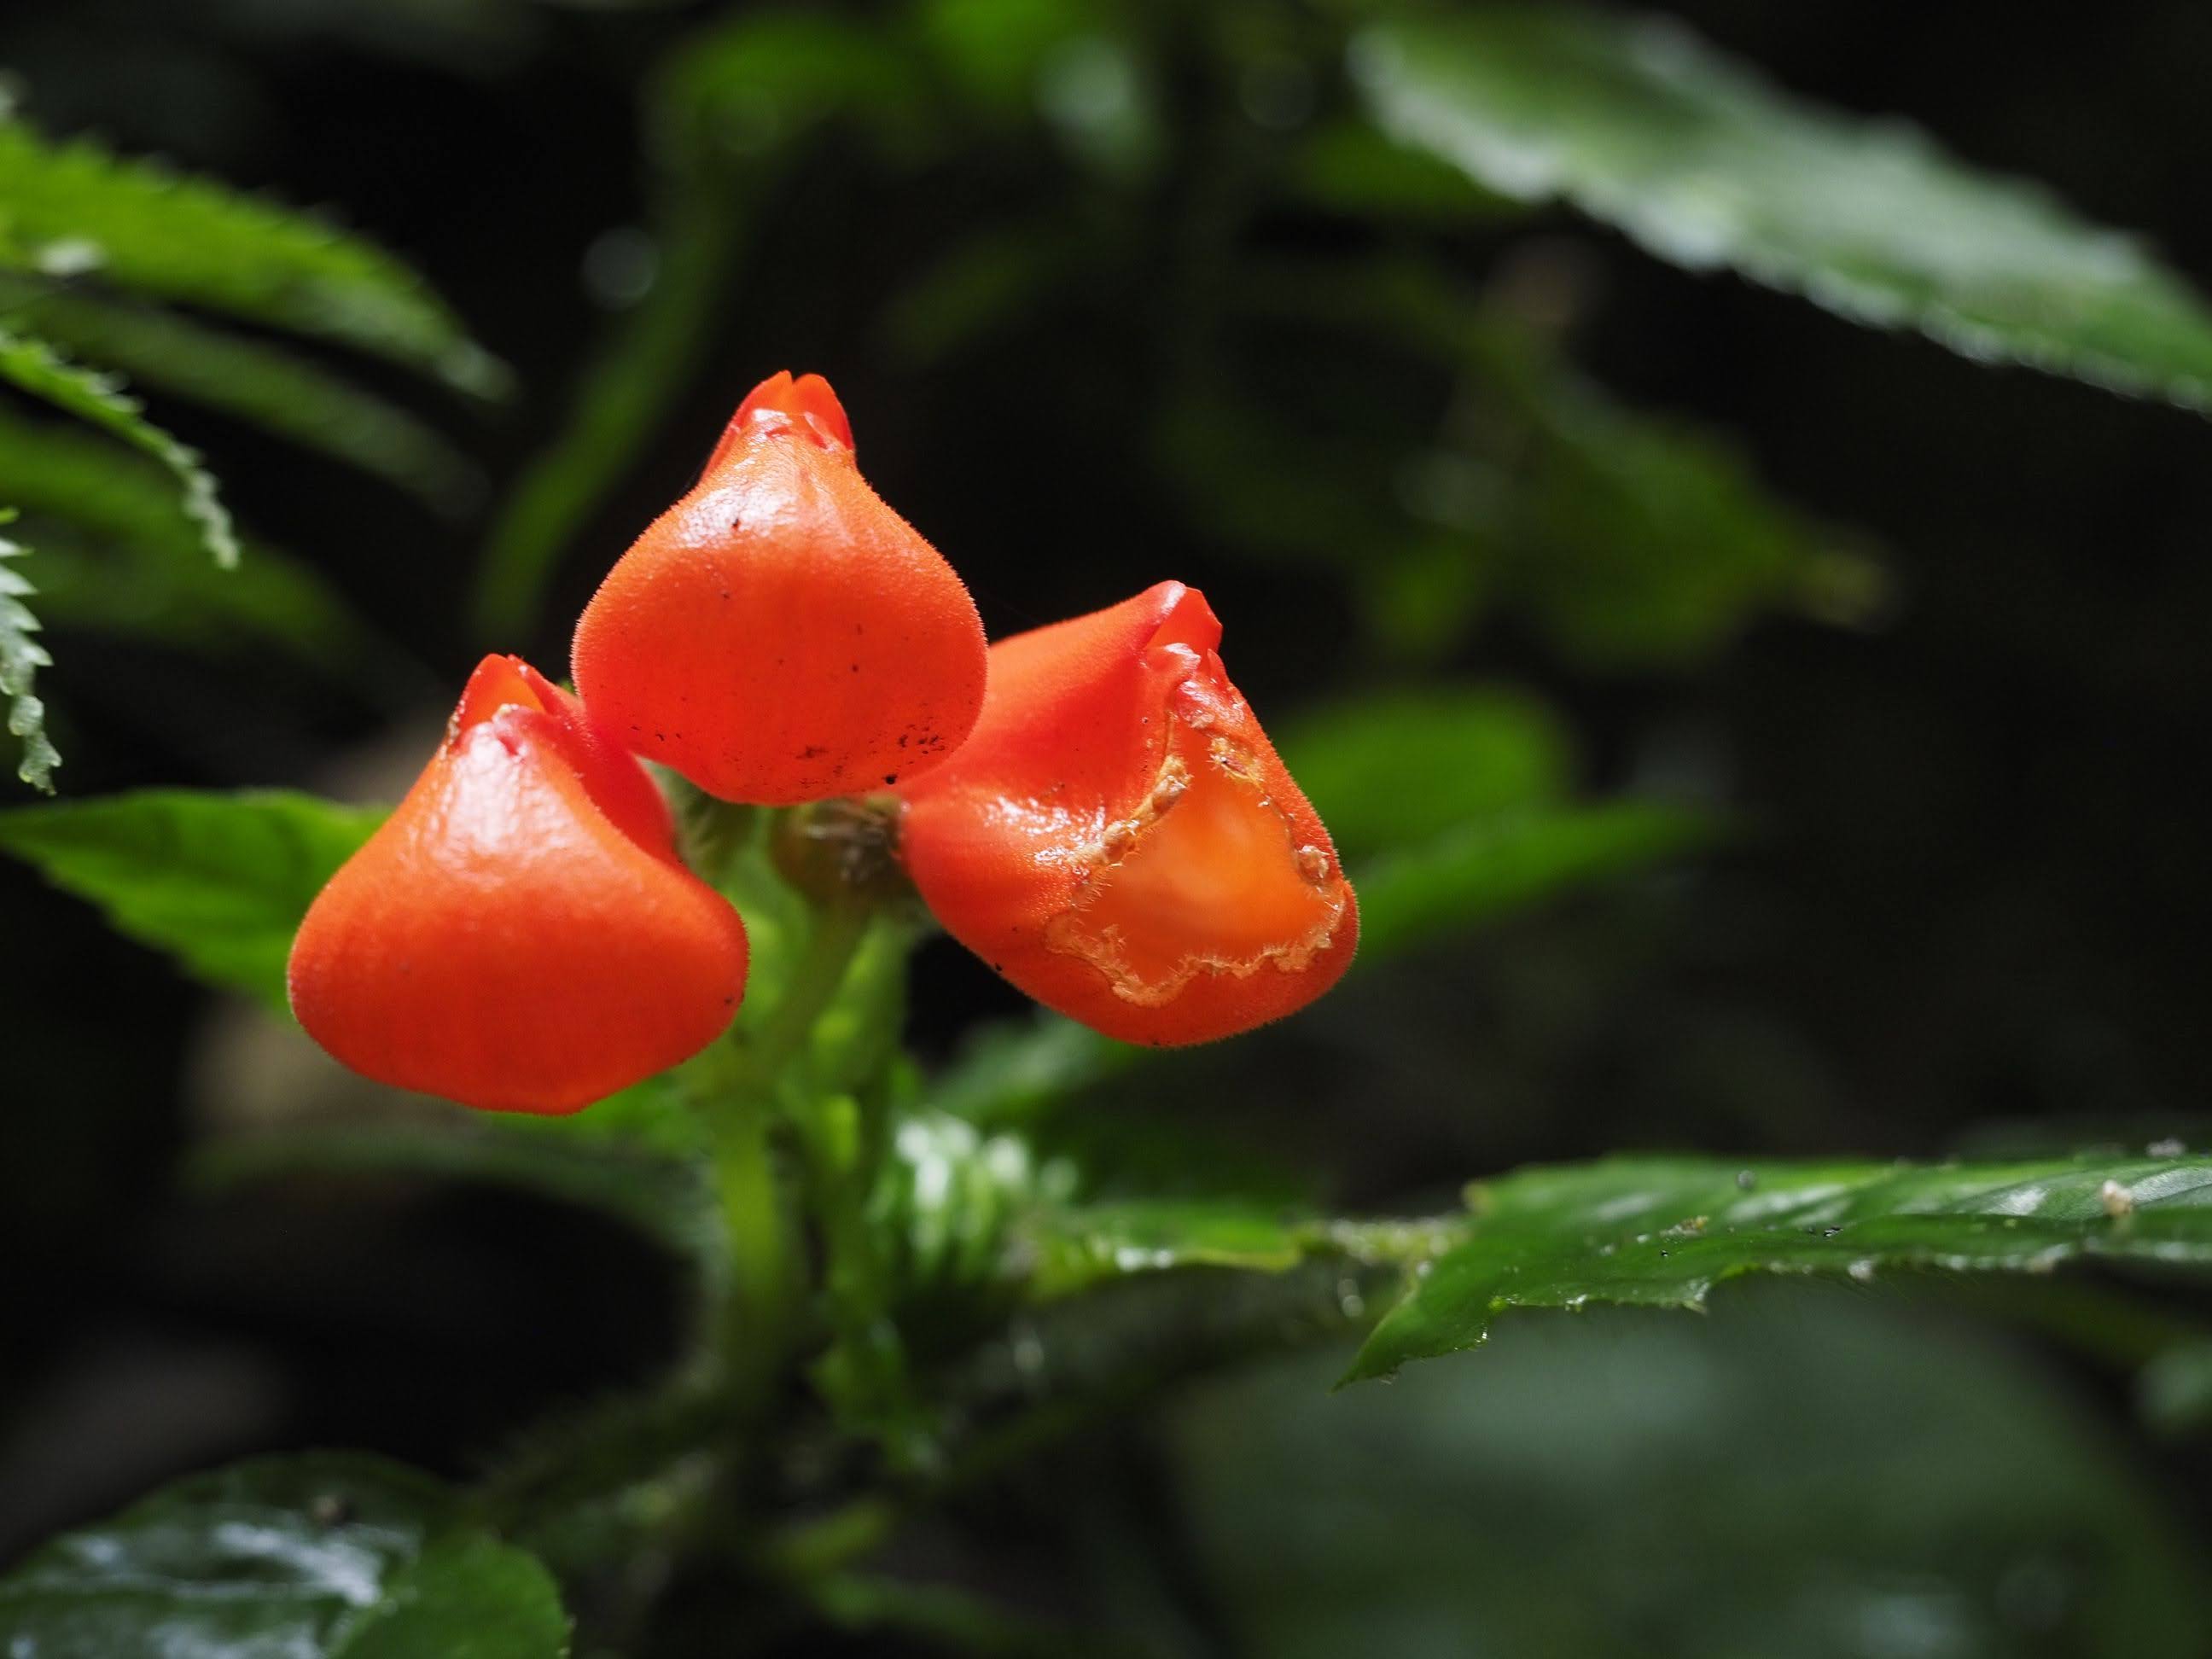 ¿Cómo se dio el redescubrimiento de una planta endémica del Ecuador luego de 40 años de que se creía extinta?